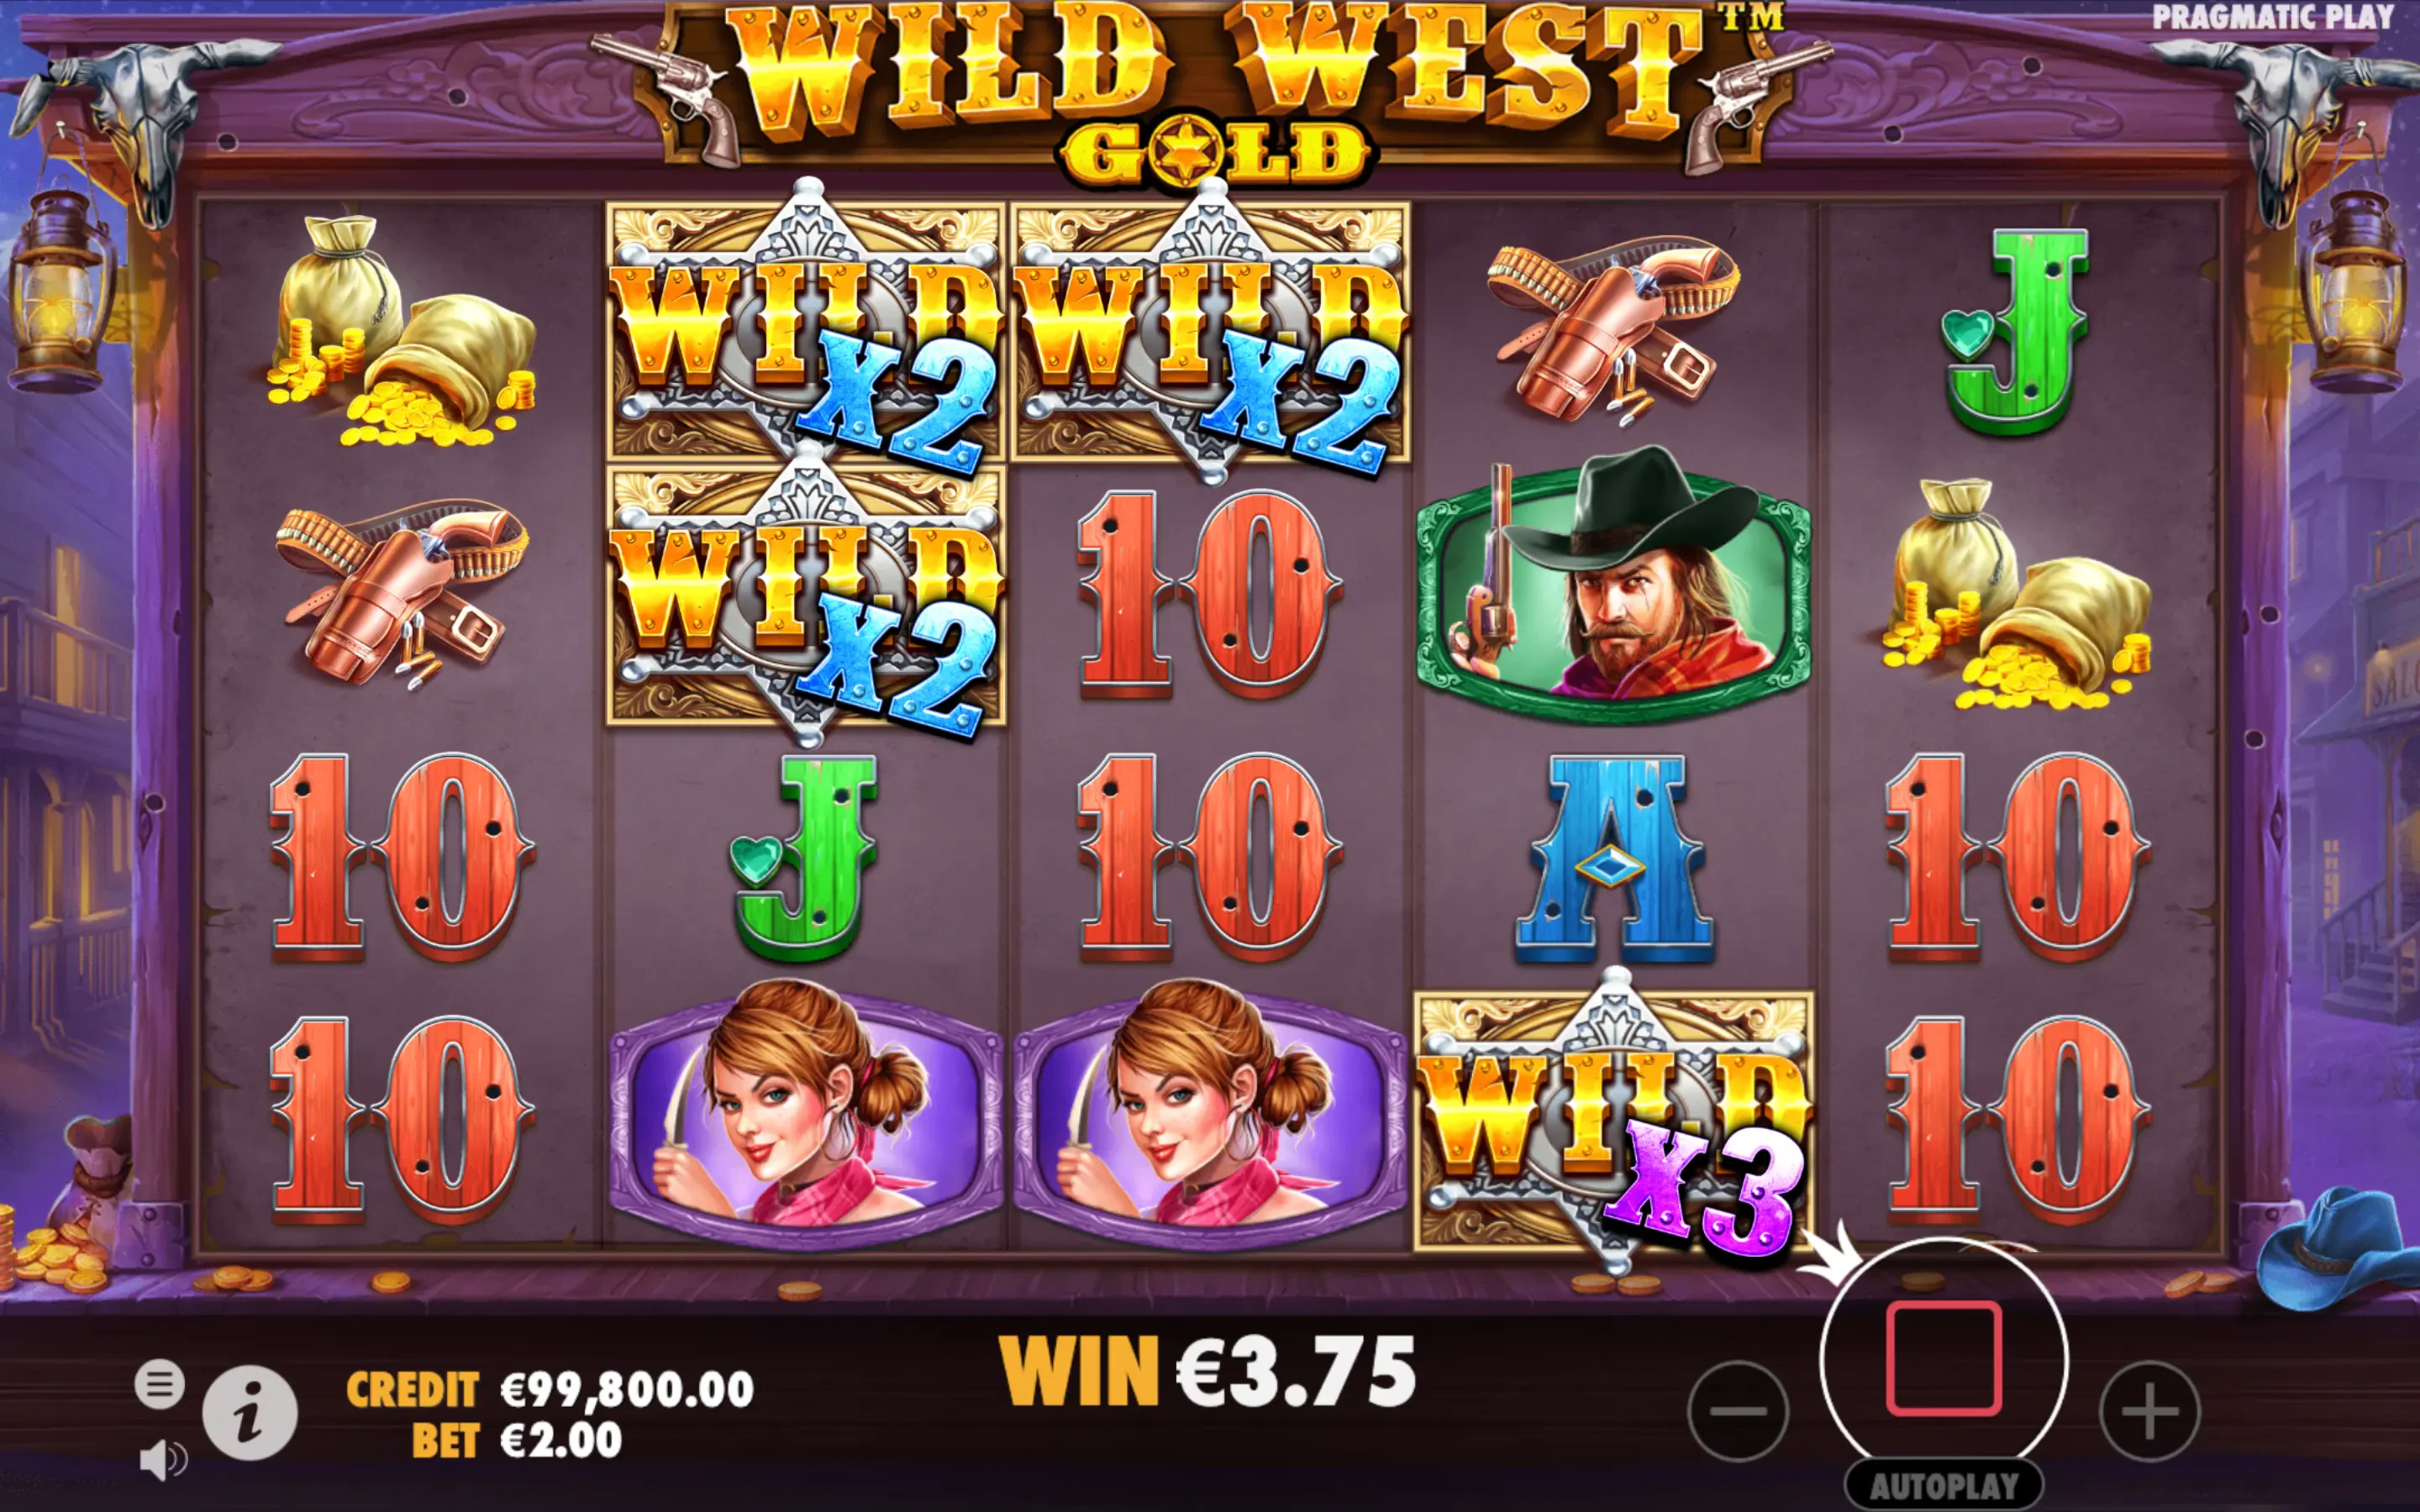 Wild West Gold bonus